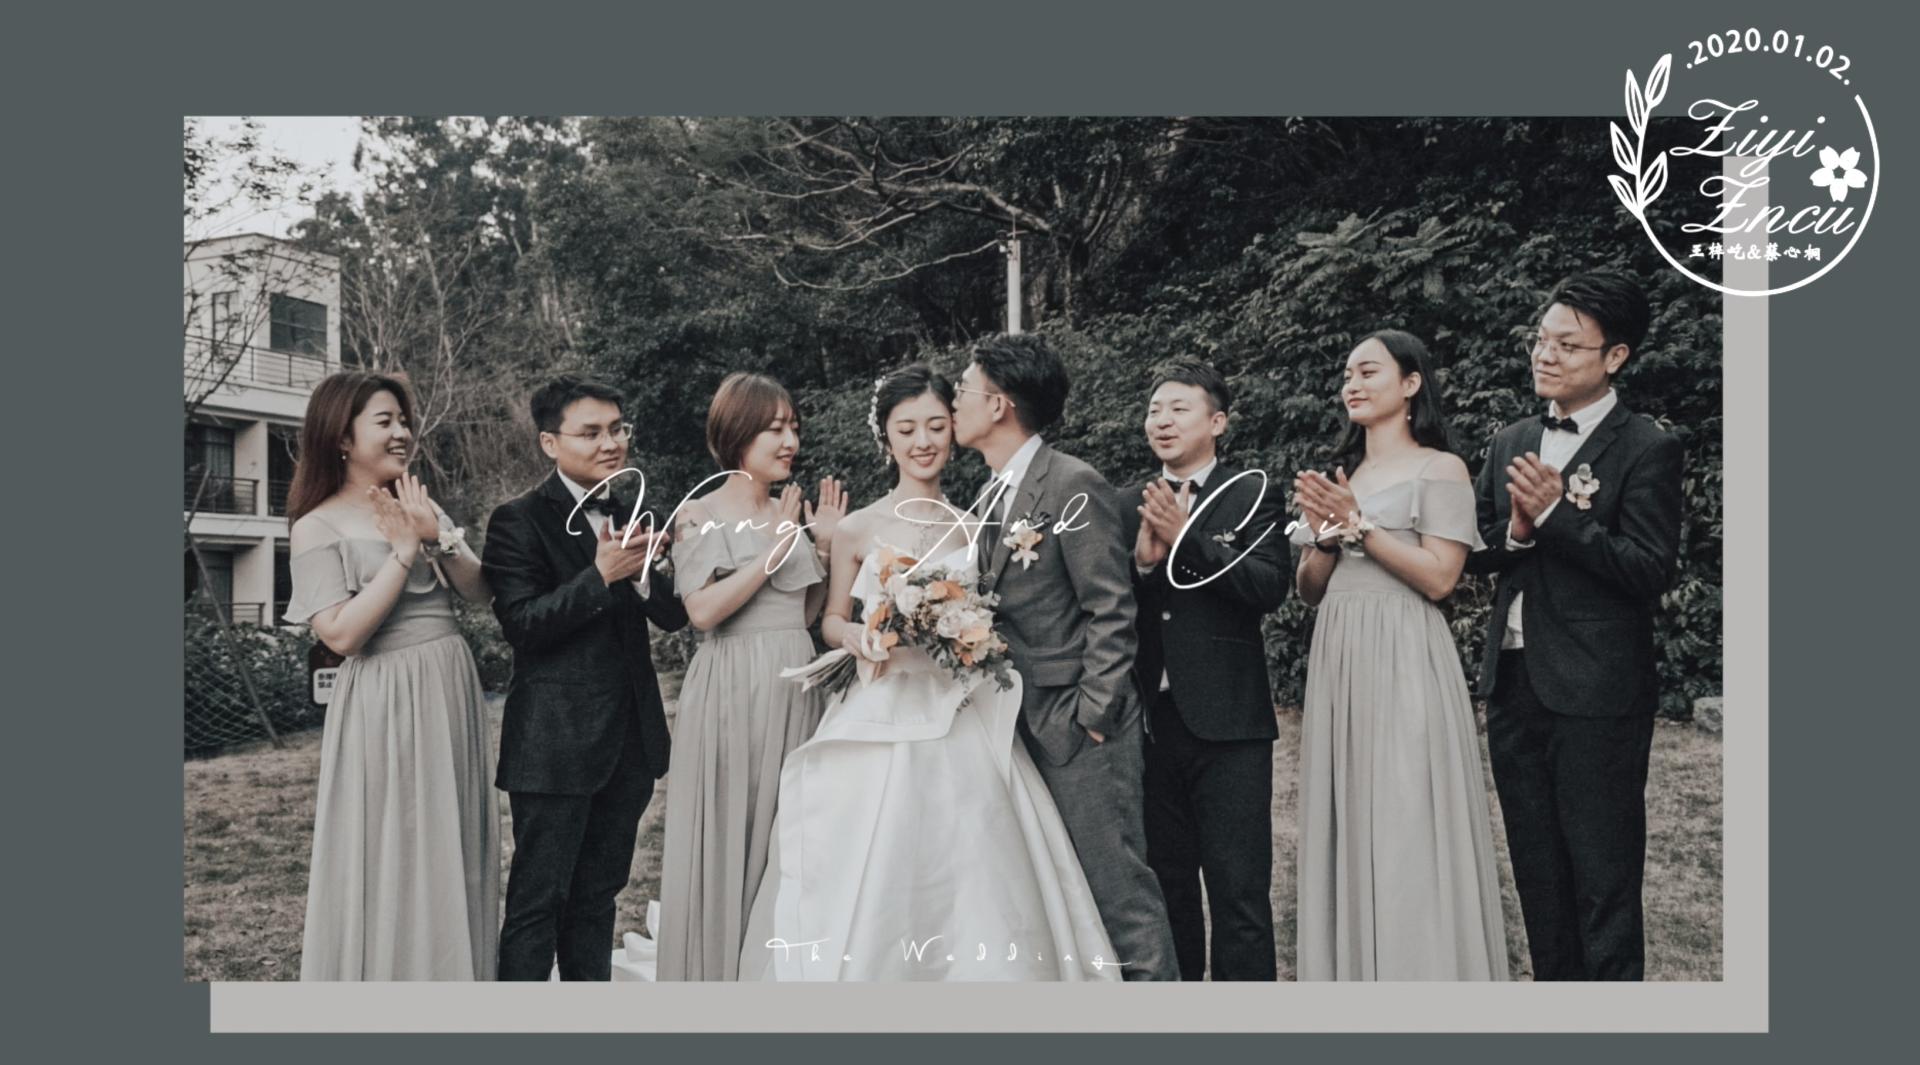 质感境界影像出品 | 2020.01.02「Wang&Cai」婚礼电影